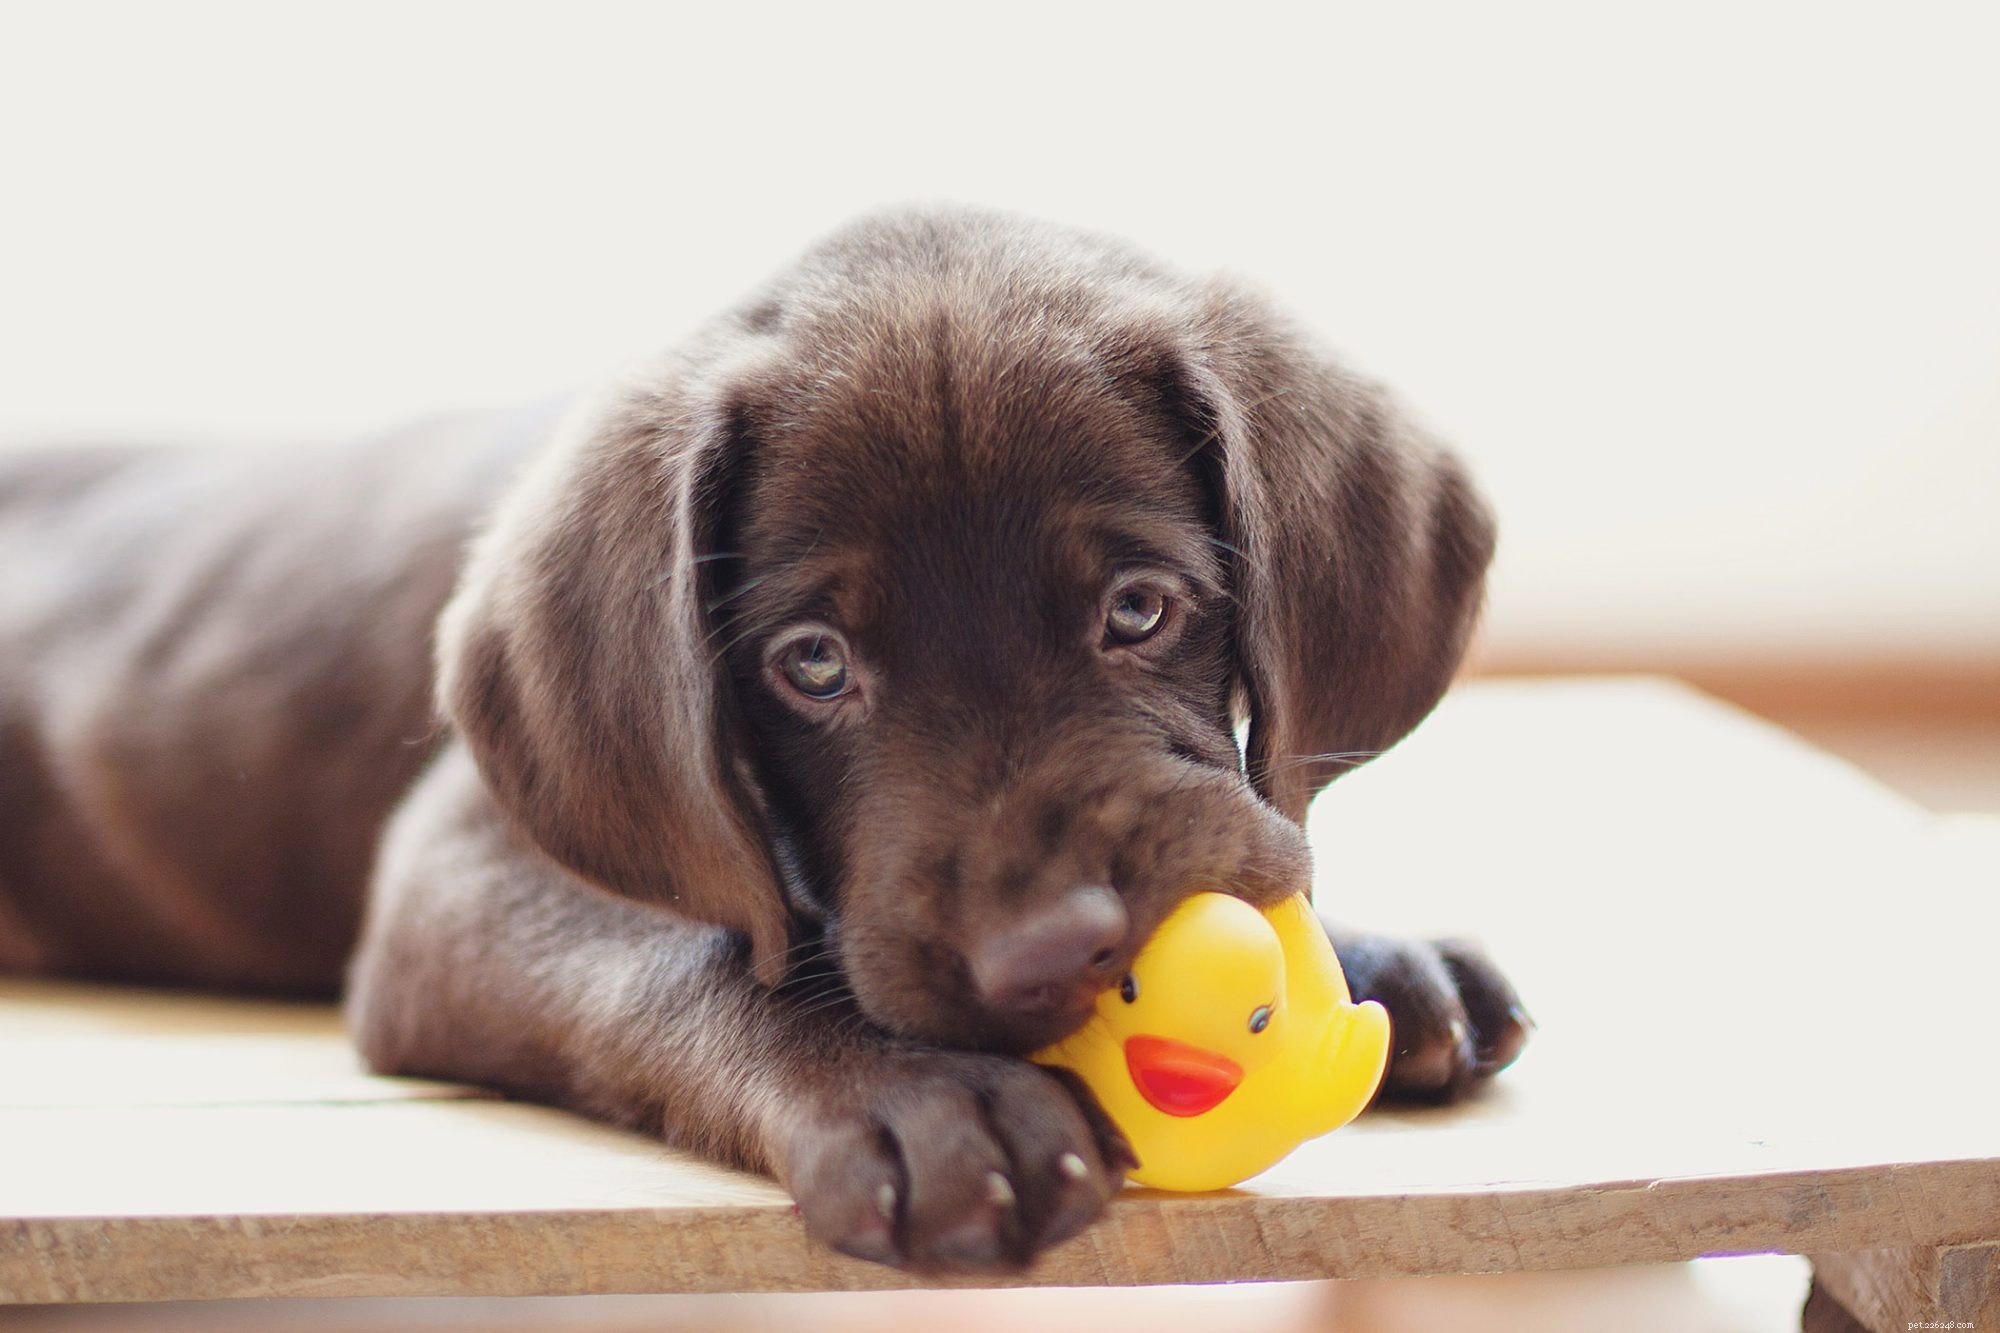 Почему собакам нравятся пищащие игрушки? Специалист по поведению животных объясняет, чего надеется достичь ваш щенок